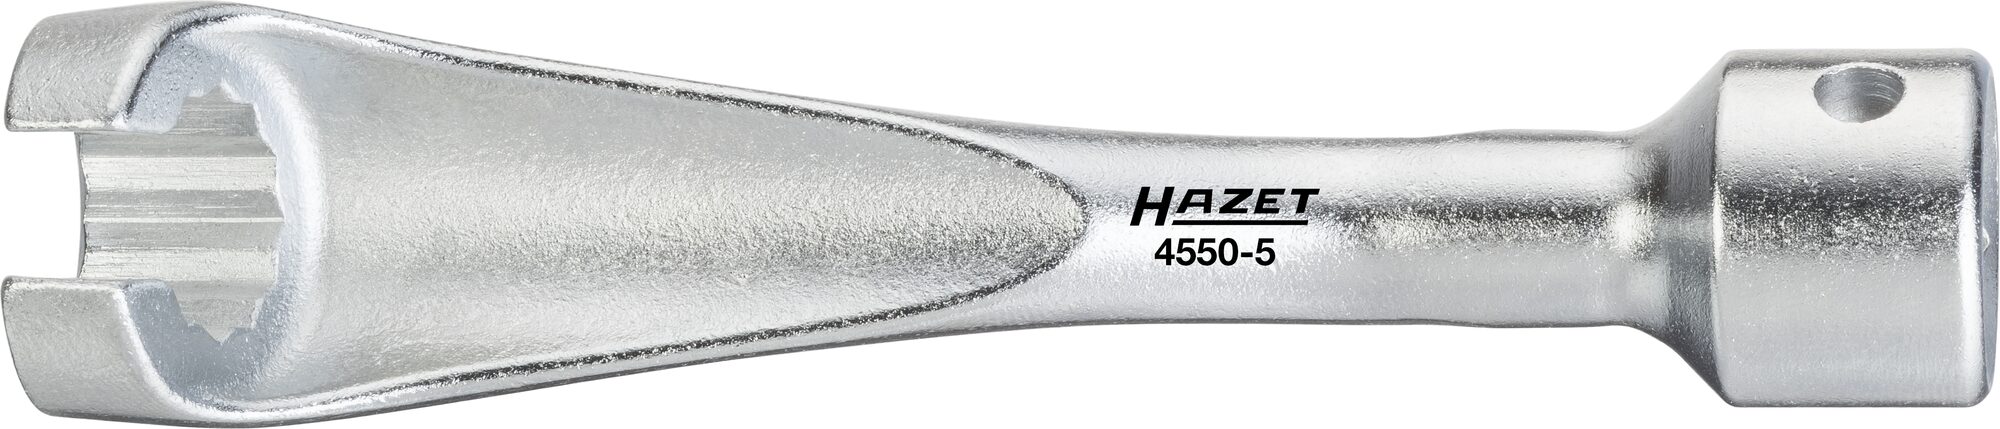 HAZET Einspritzleitungs-Schlüssel 4550-5 ∙ Vierkant12,5 mm (1/2 Zoll) ∙ Außen-Doppel-Sechskant Profil ∙ 14 mm